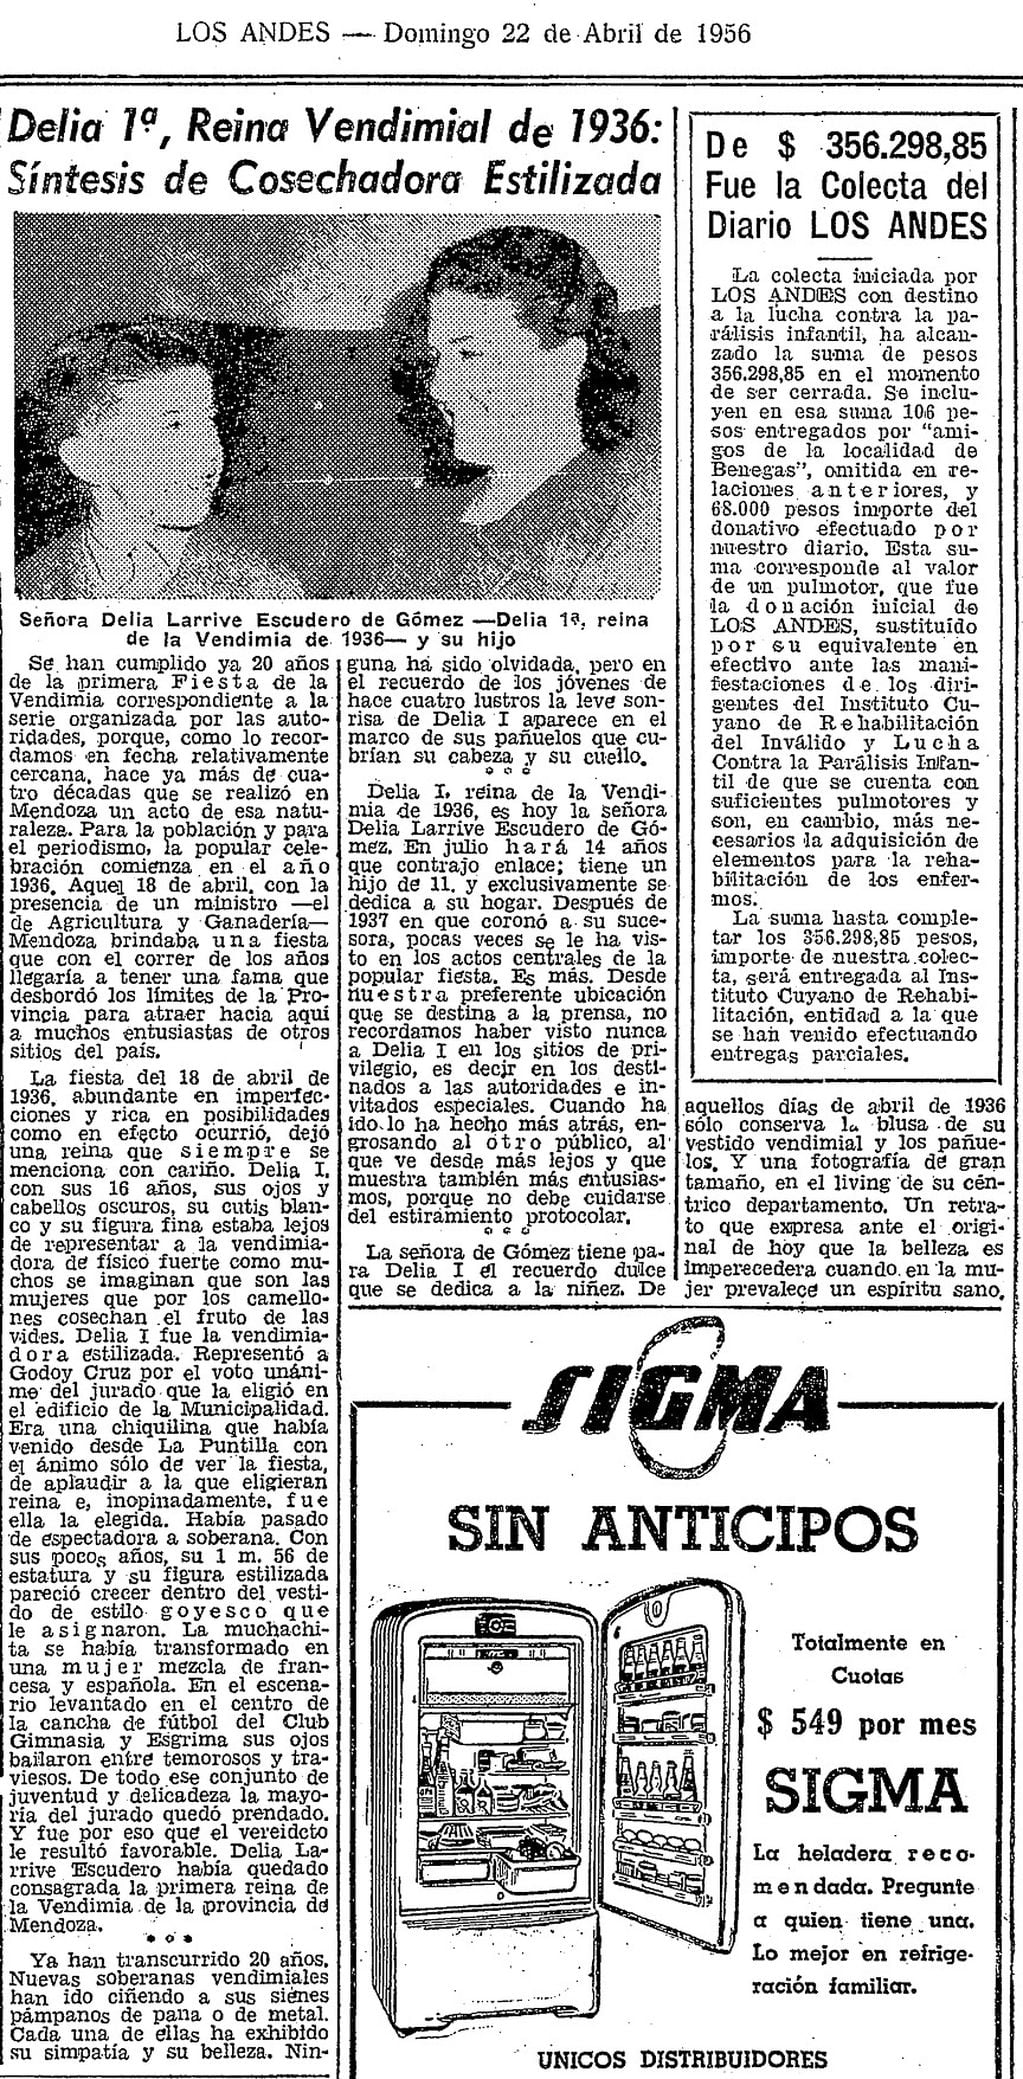 Artículo de diario Los Andes publicado el 22 de abril de 1956 | Foto: archivo Los Andes